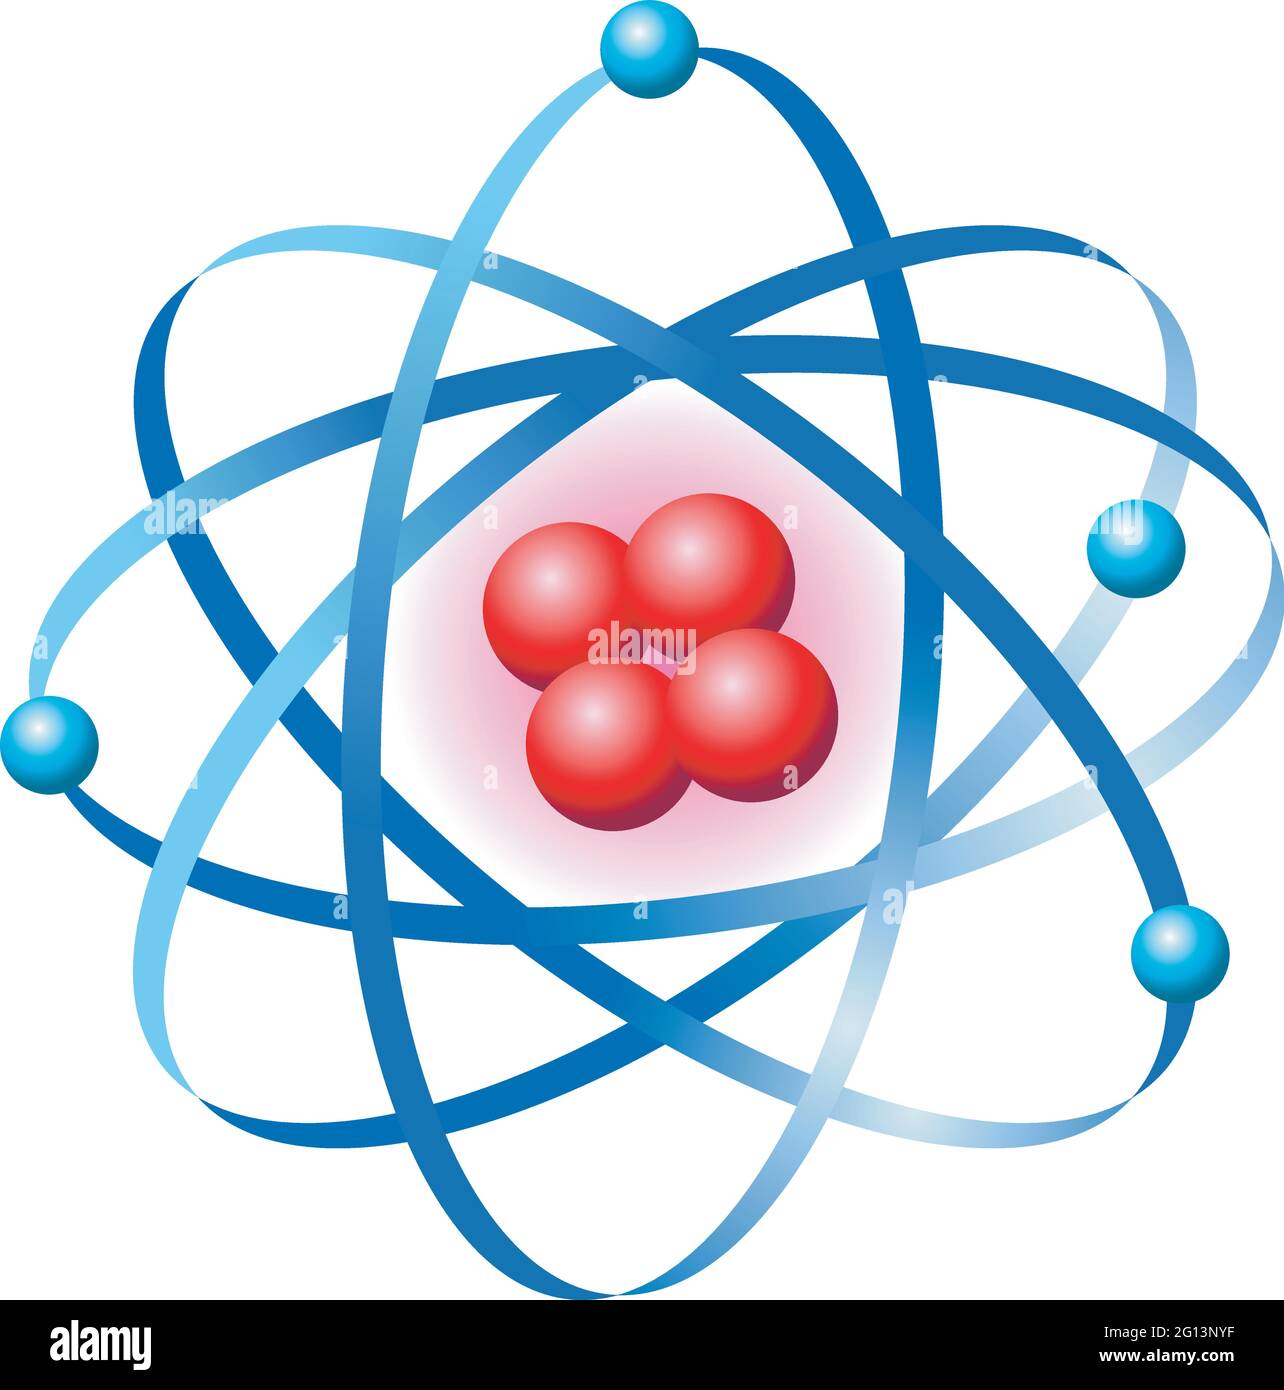 Wissenschaftliche Illustration des Symbols des Atoms. Stock Vektor